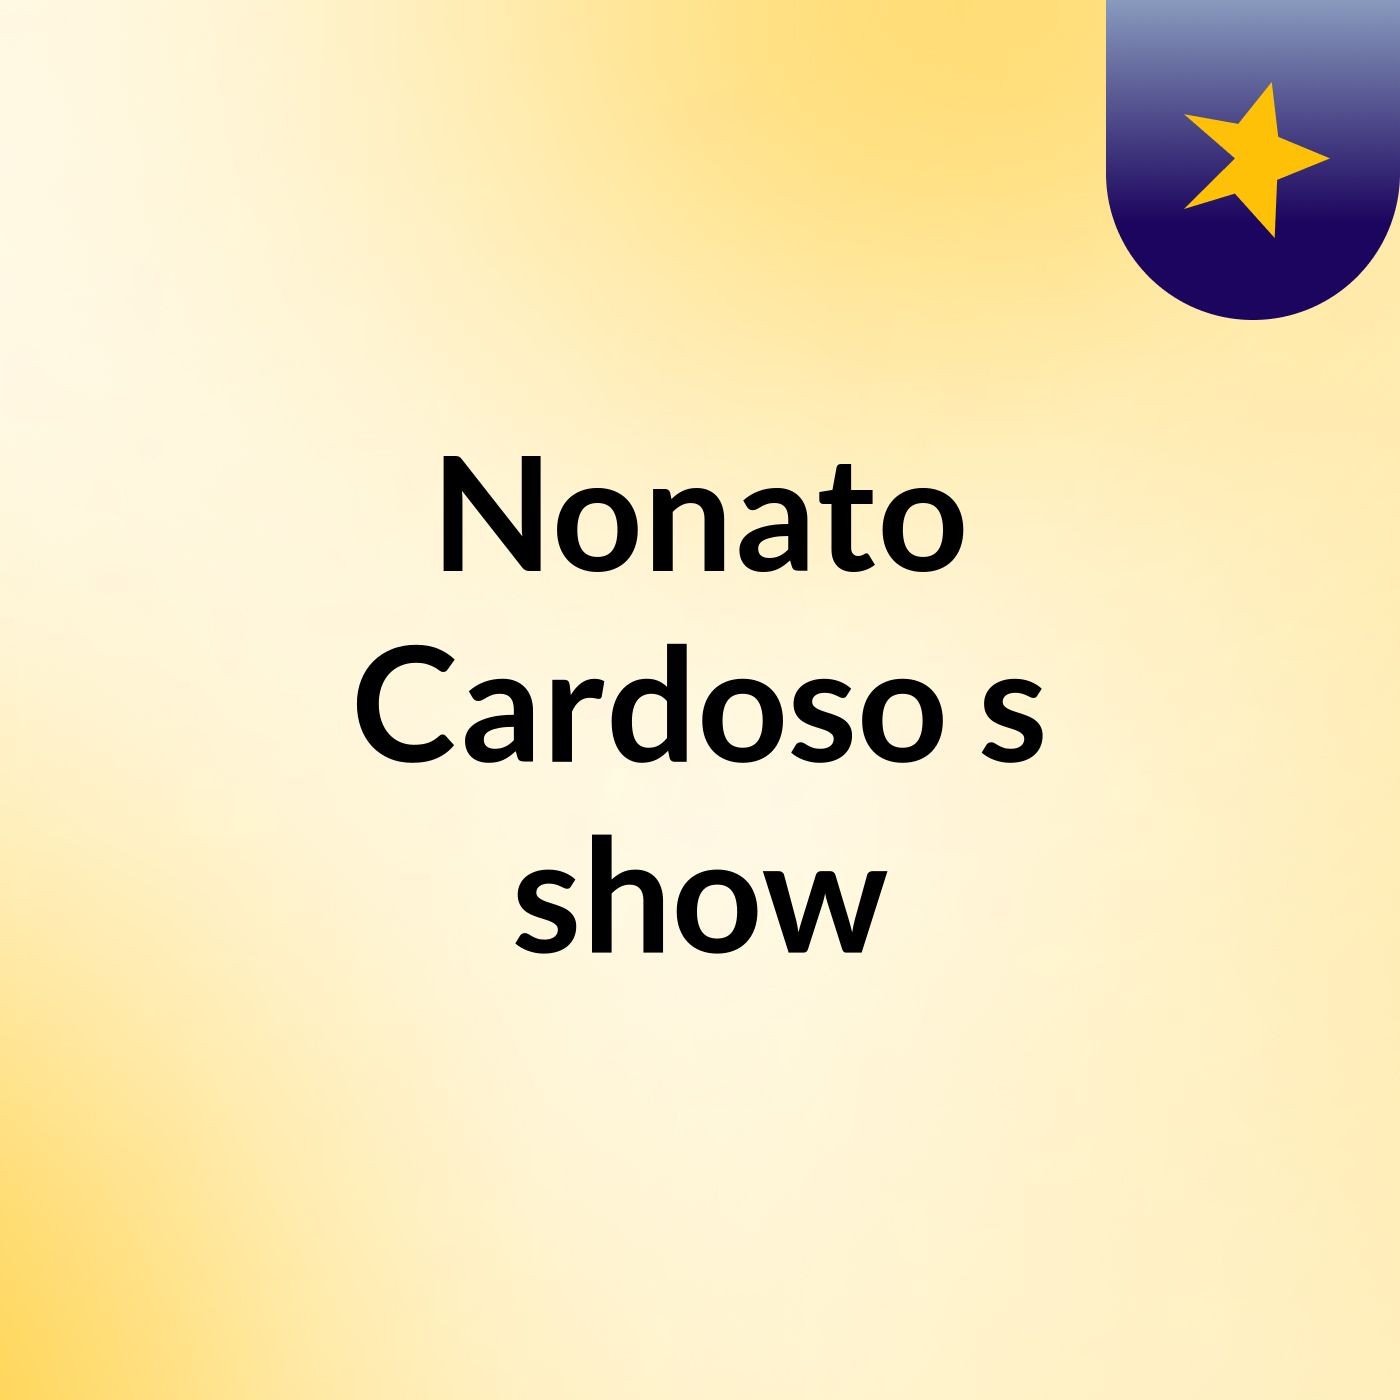 Nonato Cardoso's show